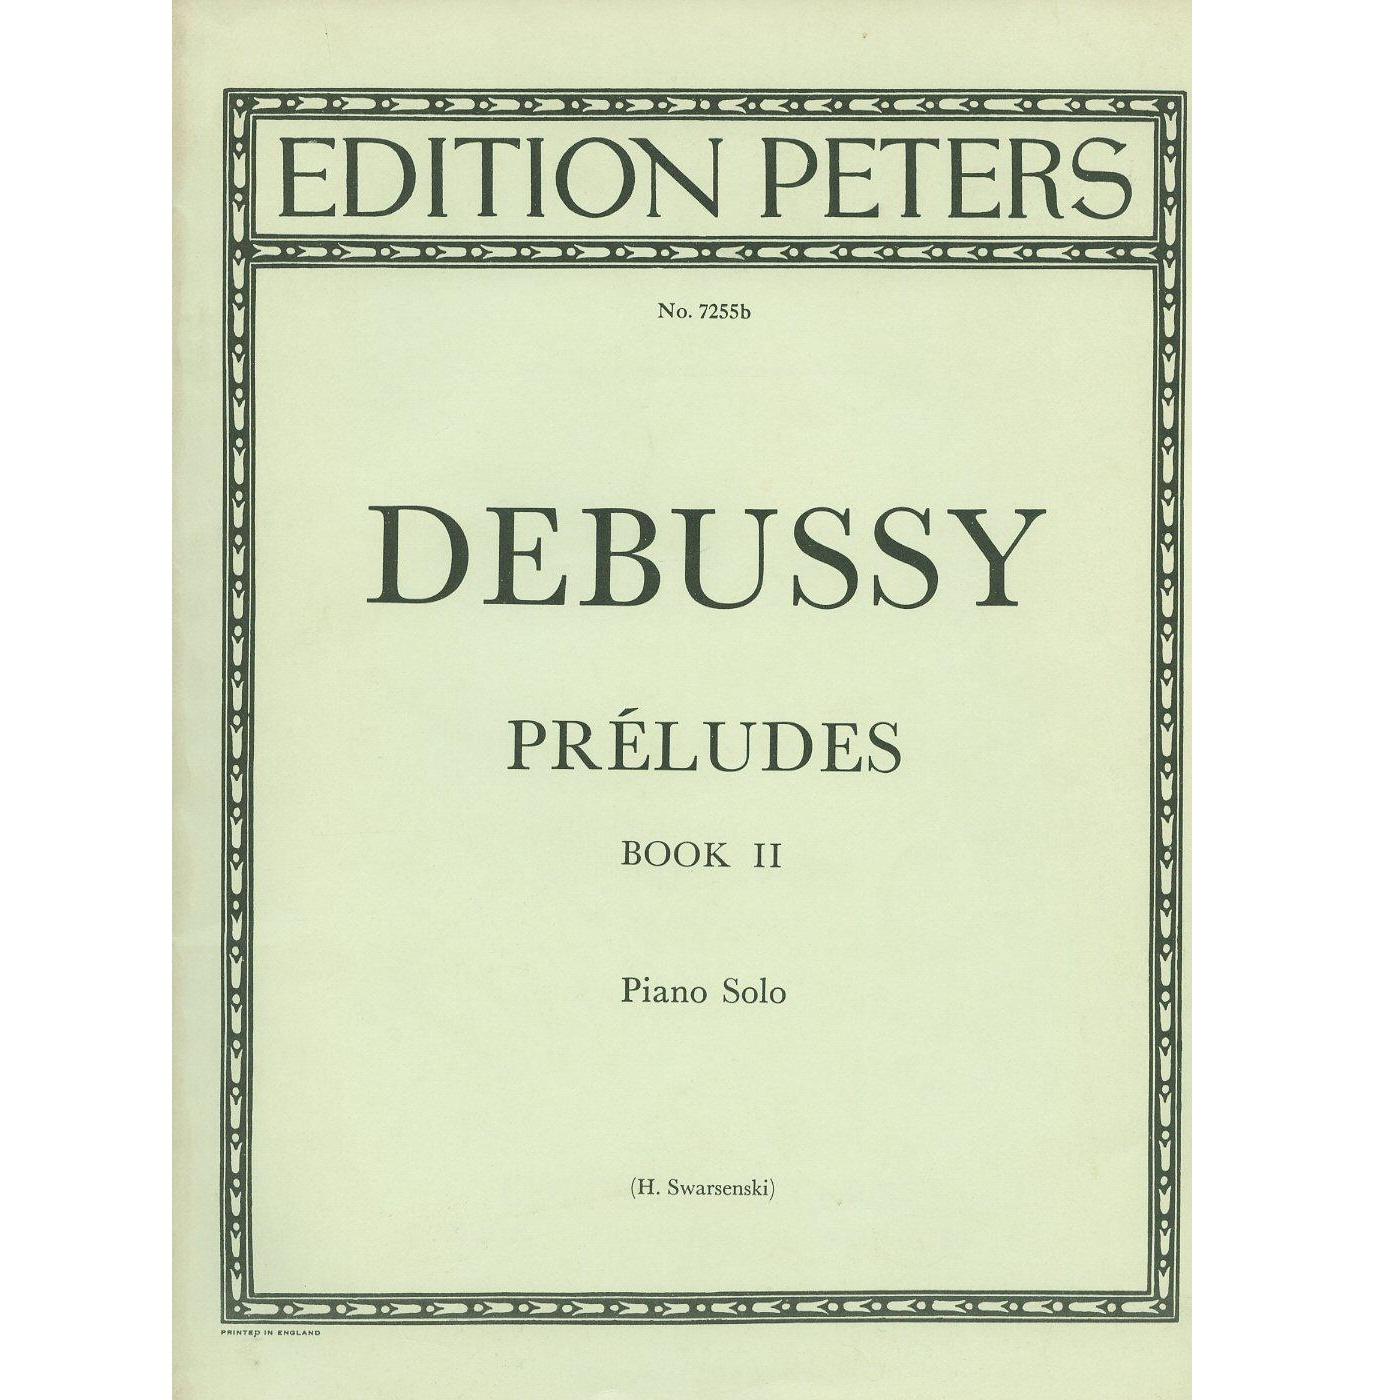 Debussy Preludes Book II Piano Solo (H. Swarsenski) - Edition Peters